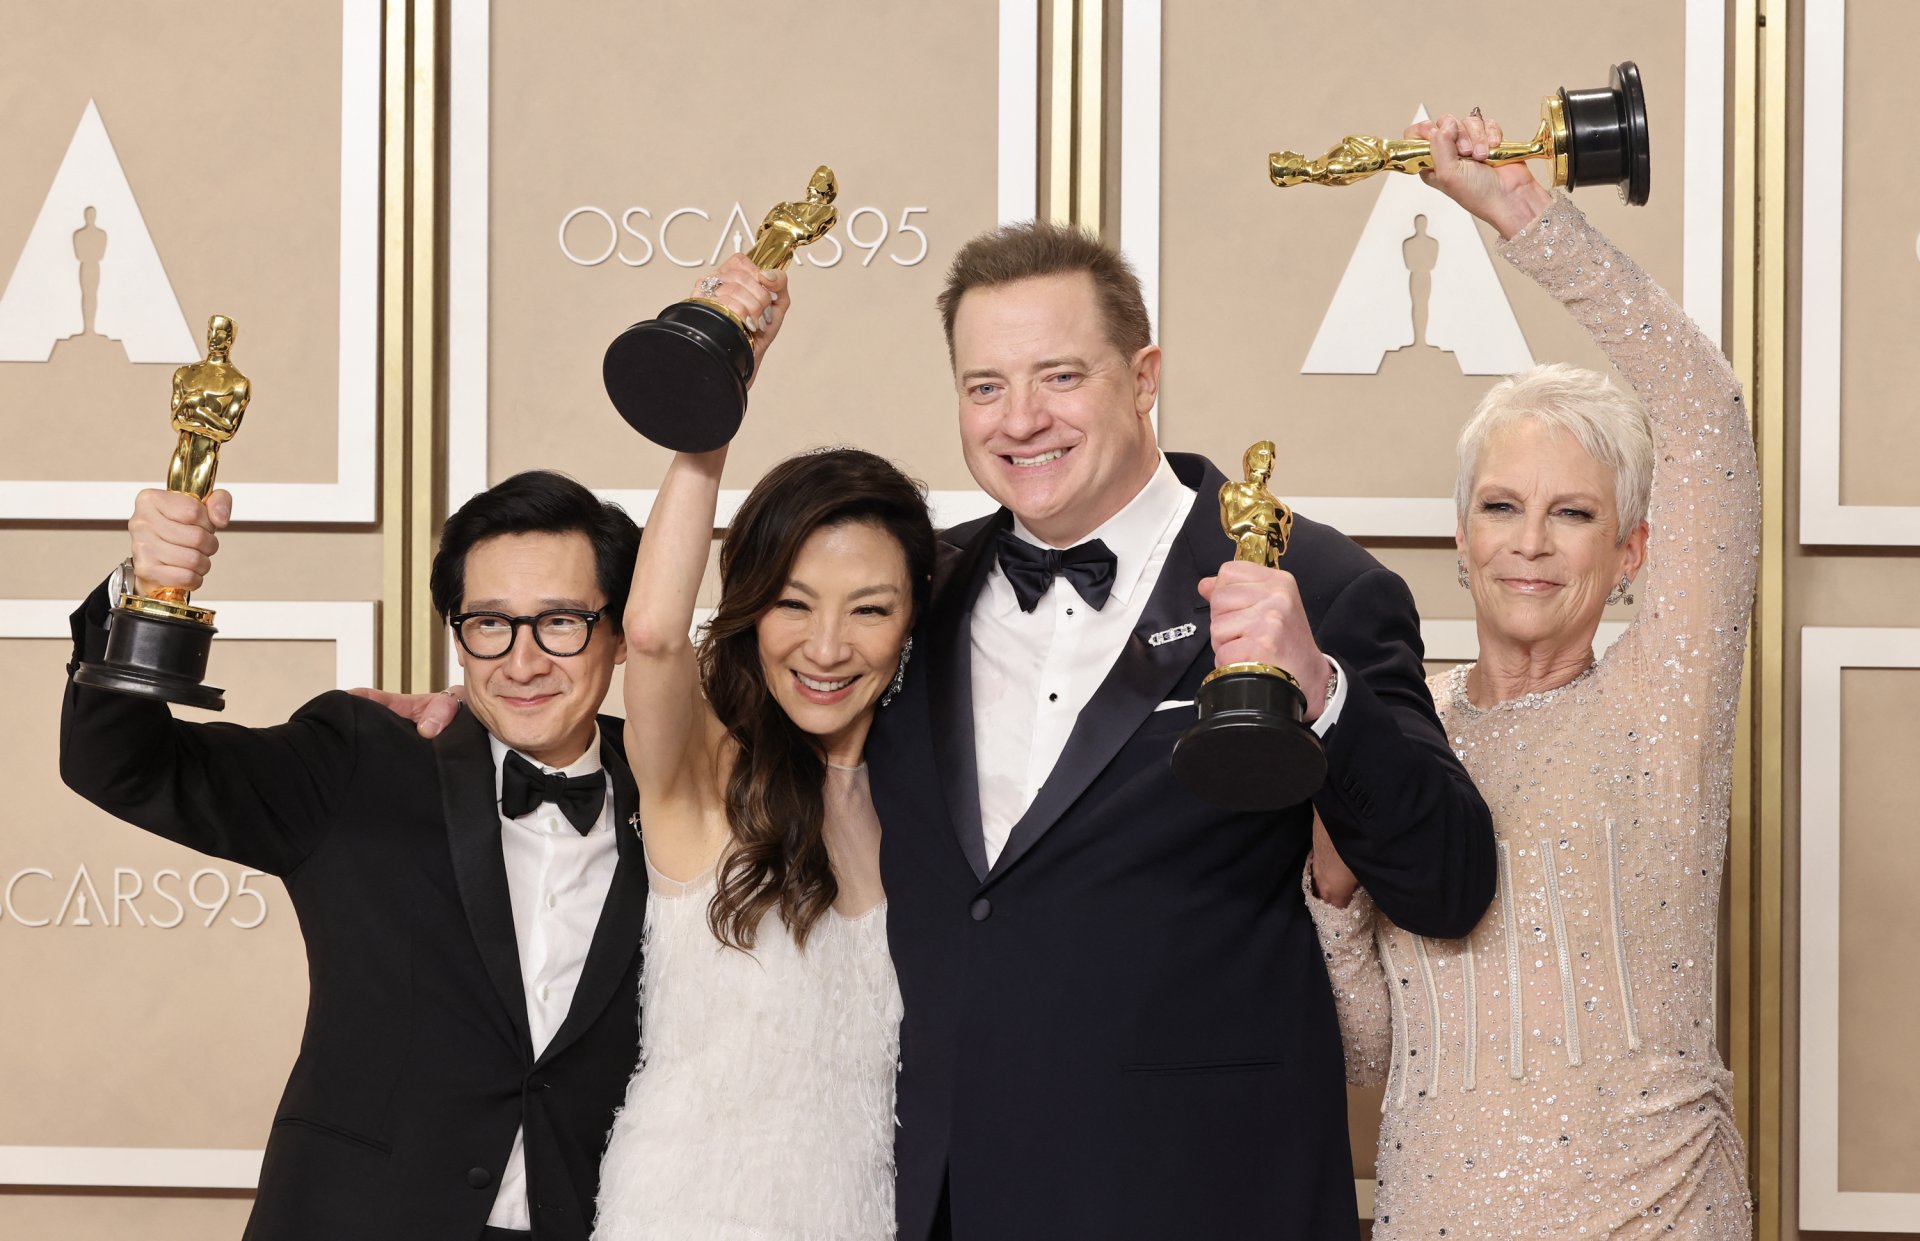 Dos películas arrasaron con los Oscar: qué significa esto para Hollywood y la industria del cine